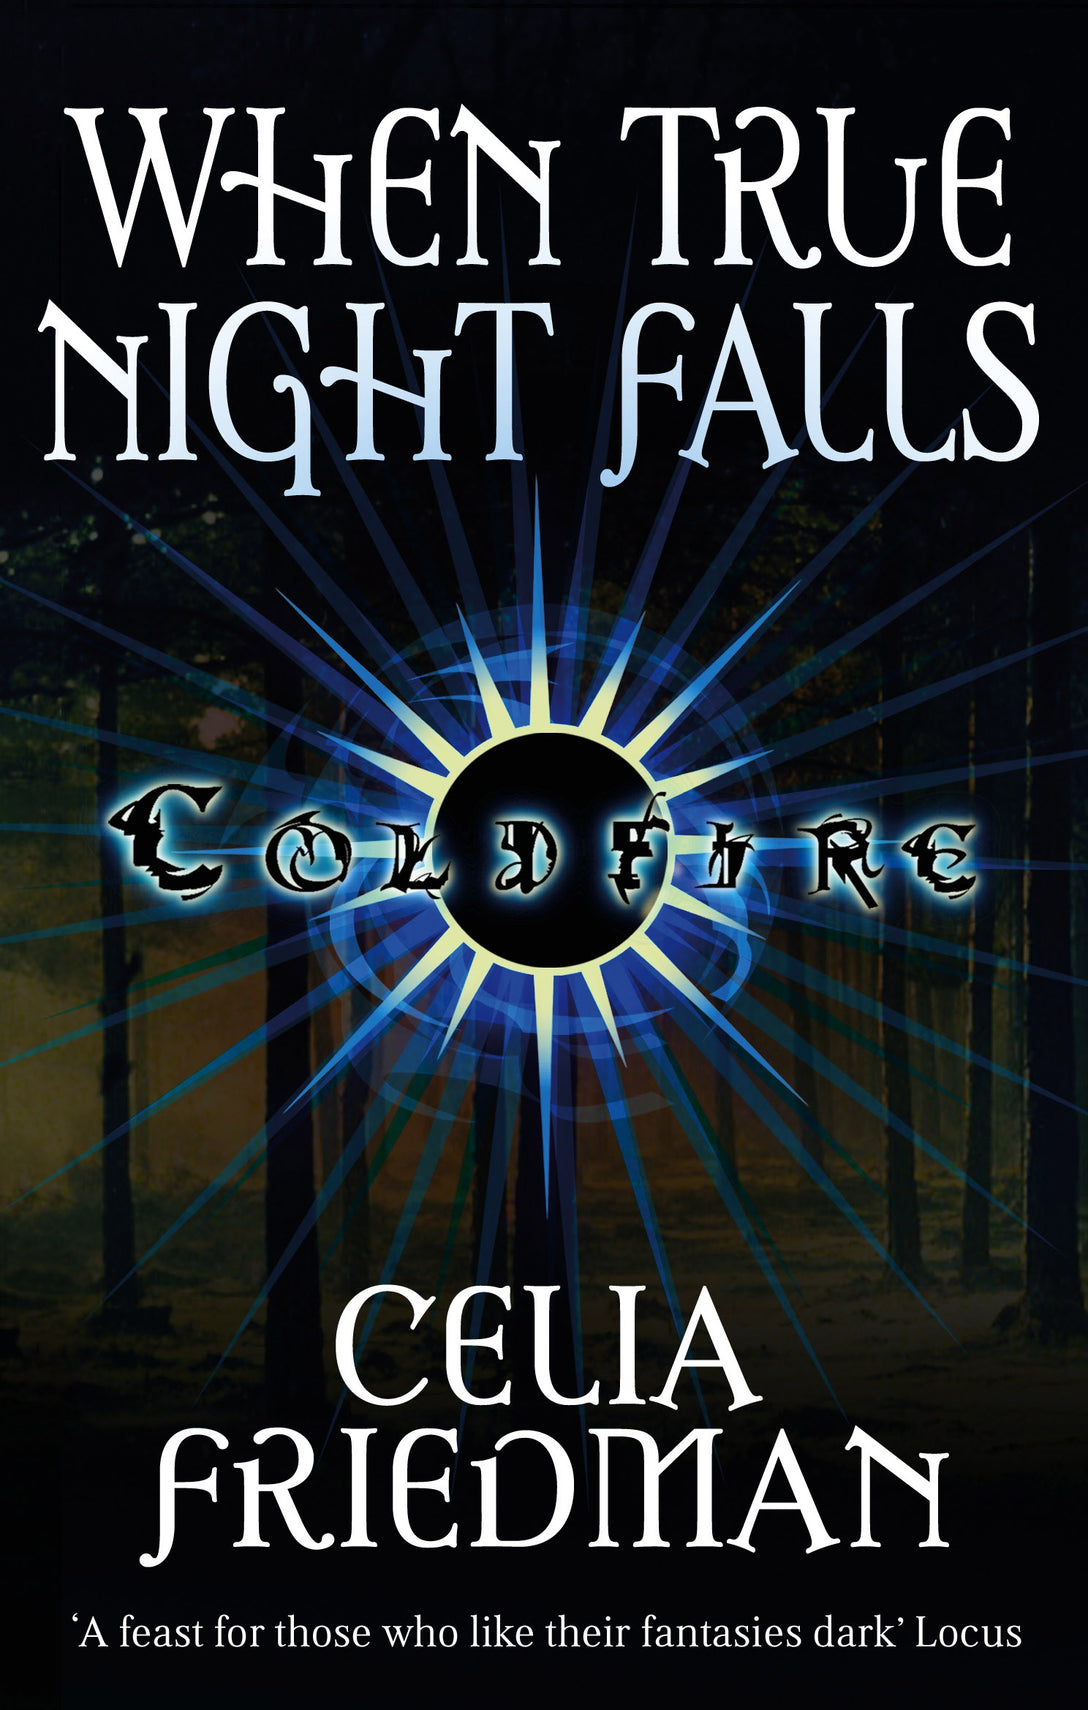 When True Night Falls by Celia Friedman